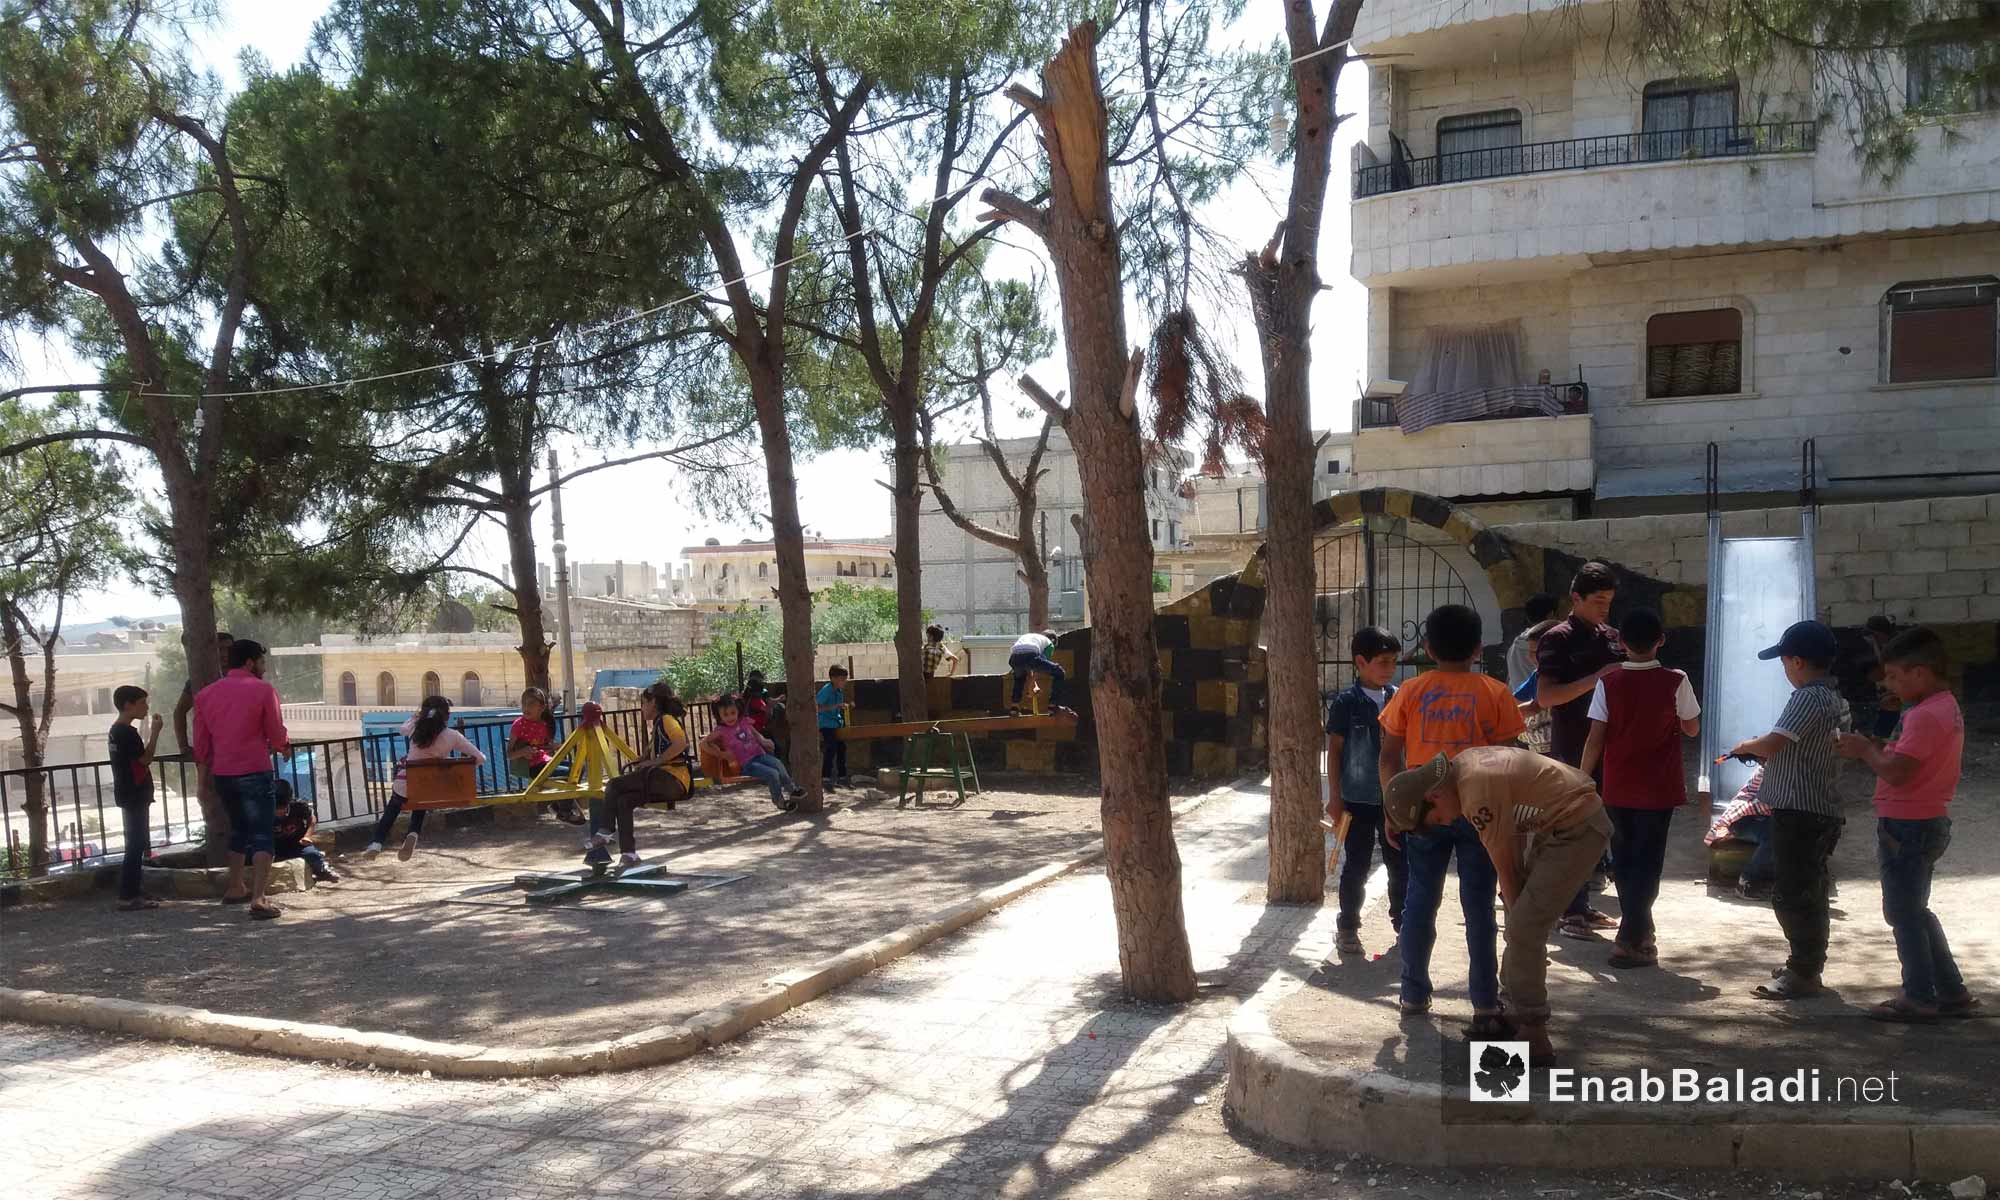 أطفال يلعبون في حديقة بمدينة عفرين - 16 من حزيران 2018 (عنب بلدي)